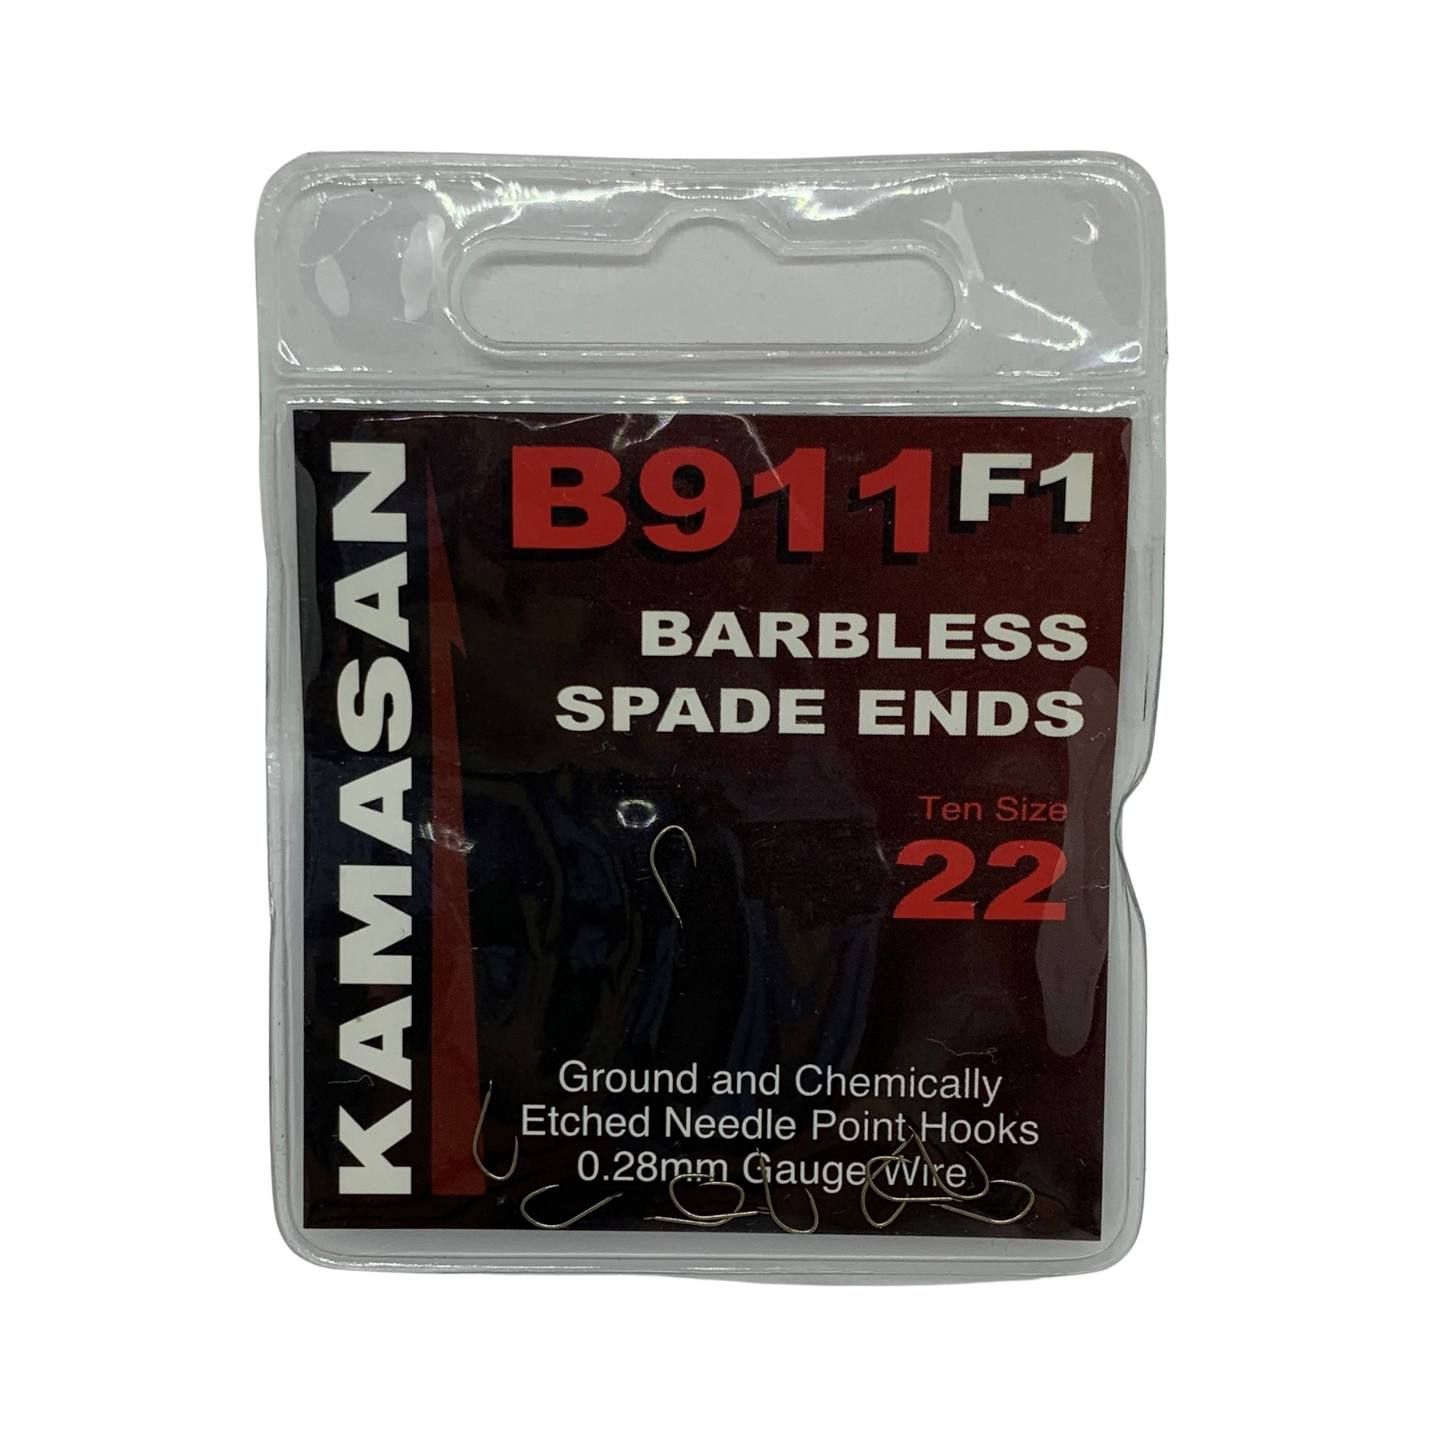 Kamasan B911 F1 Spade End Hooks - Size 22